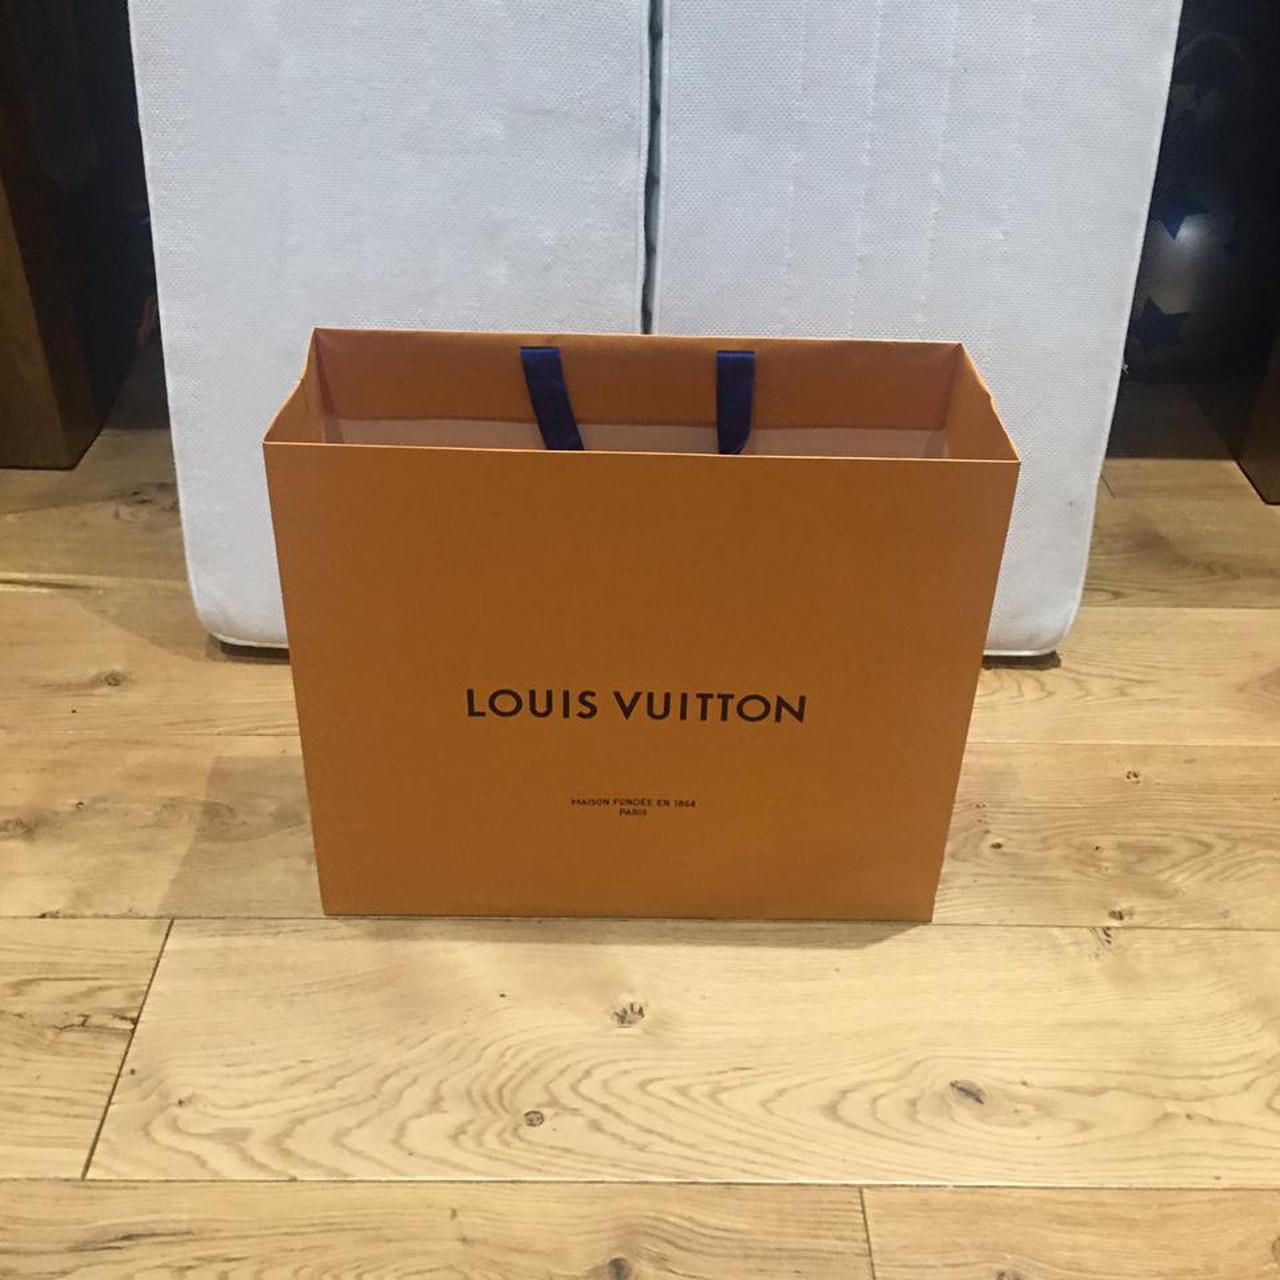 Authentic Louie Vuitton box